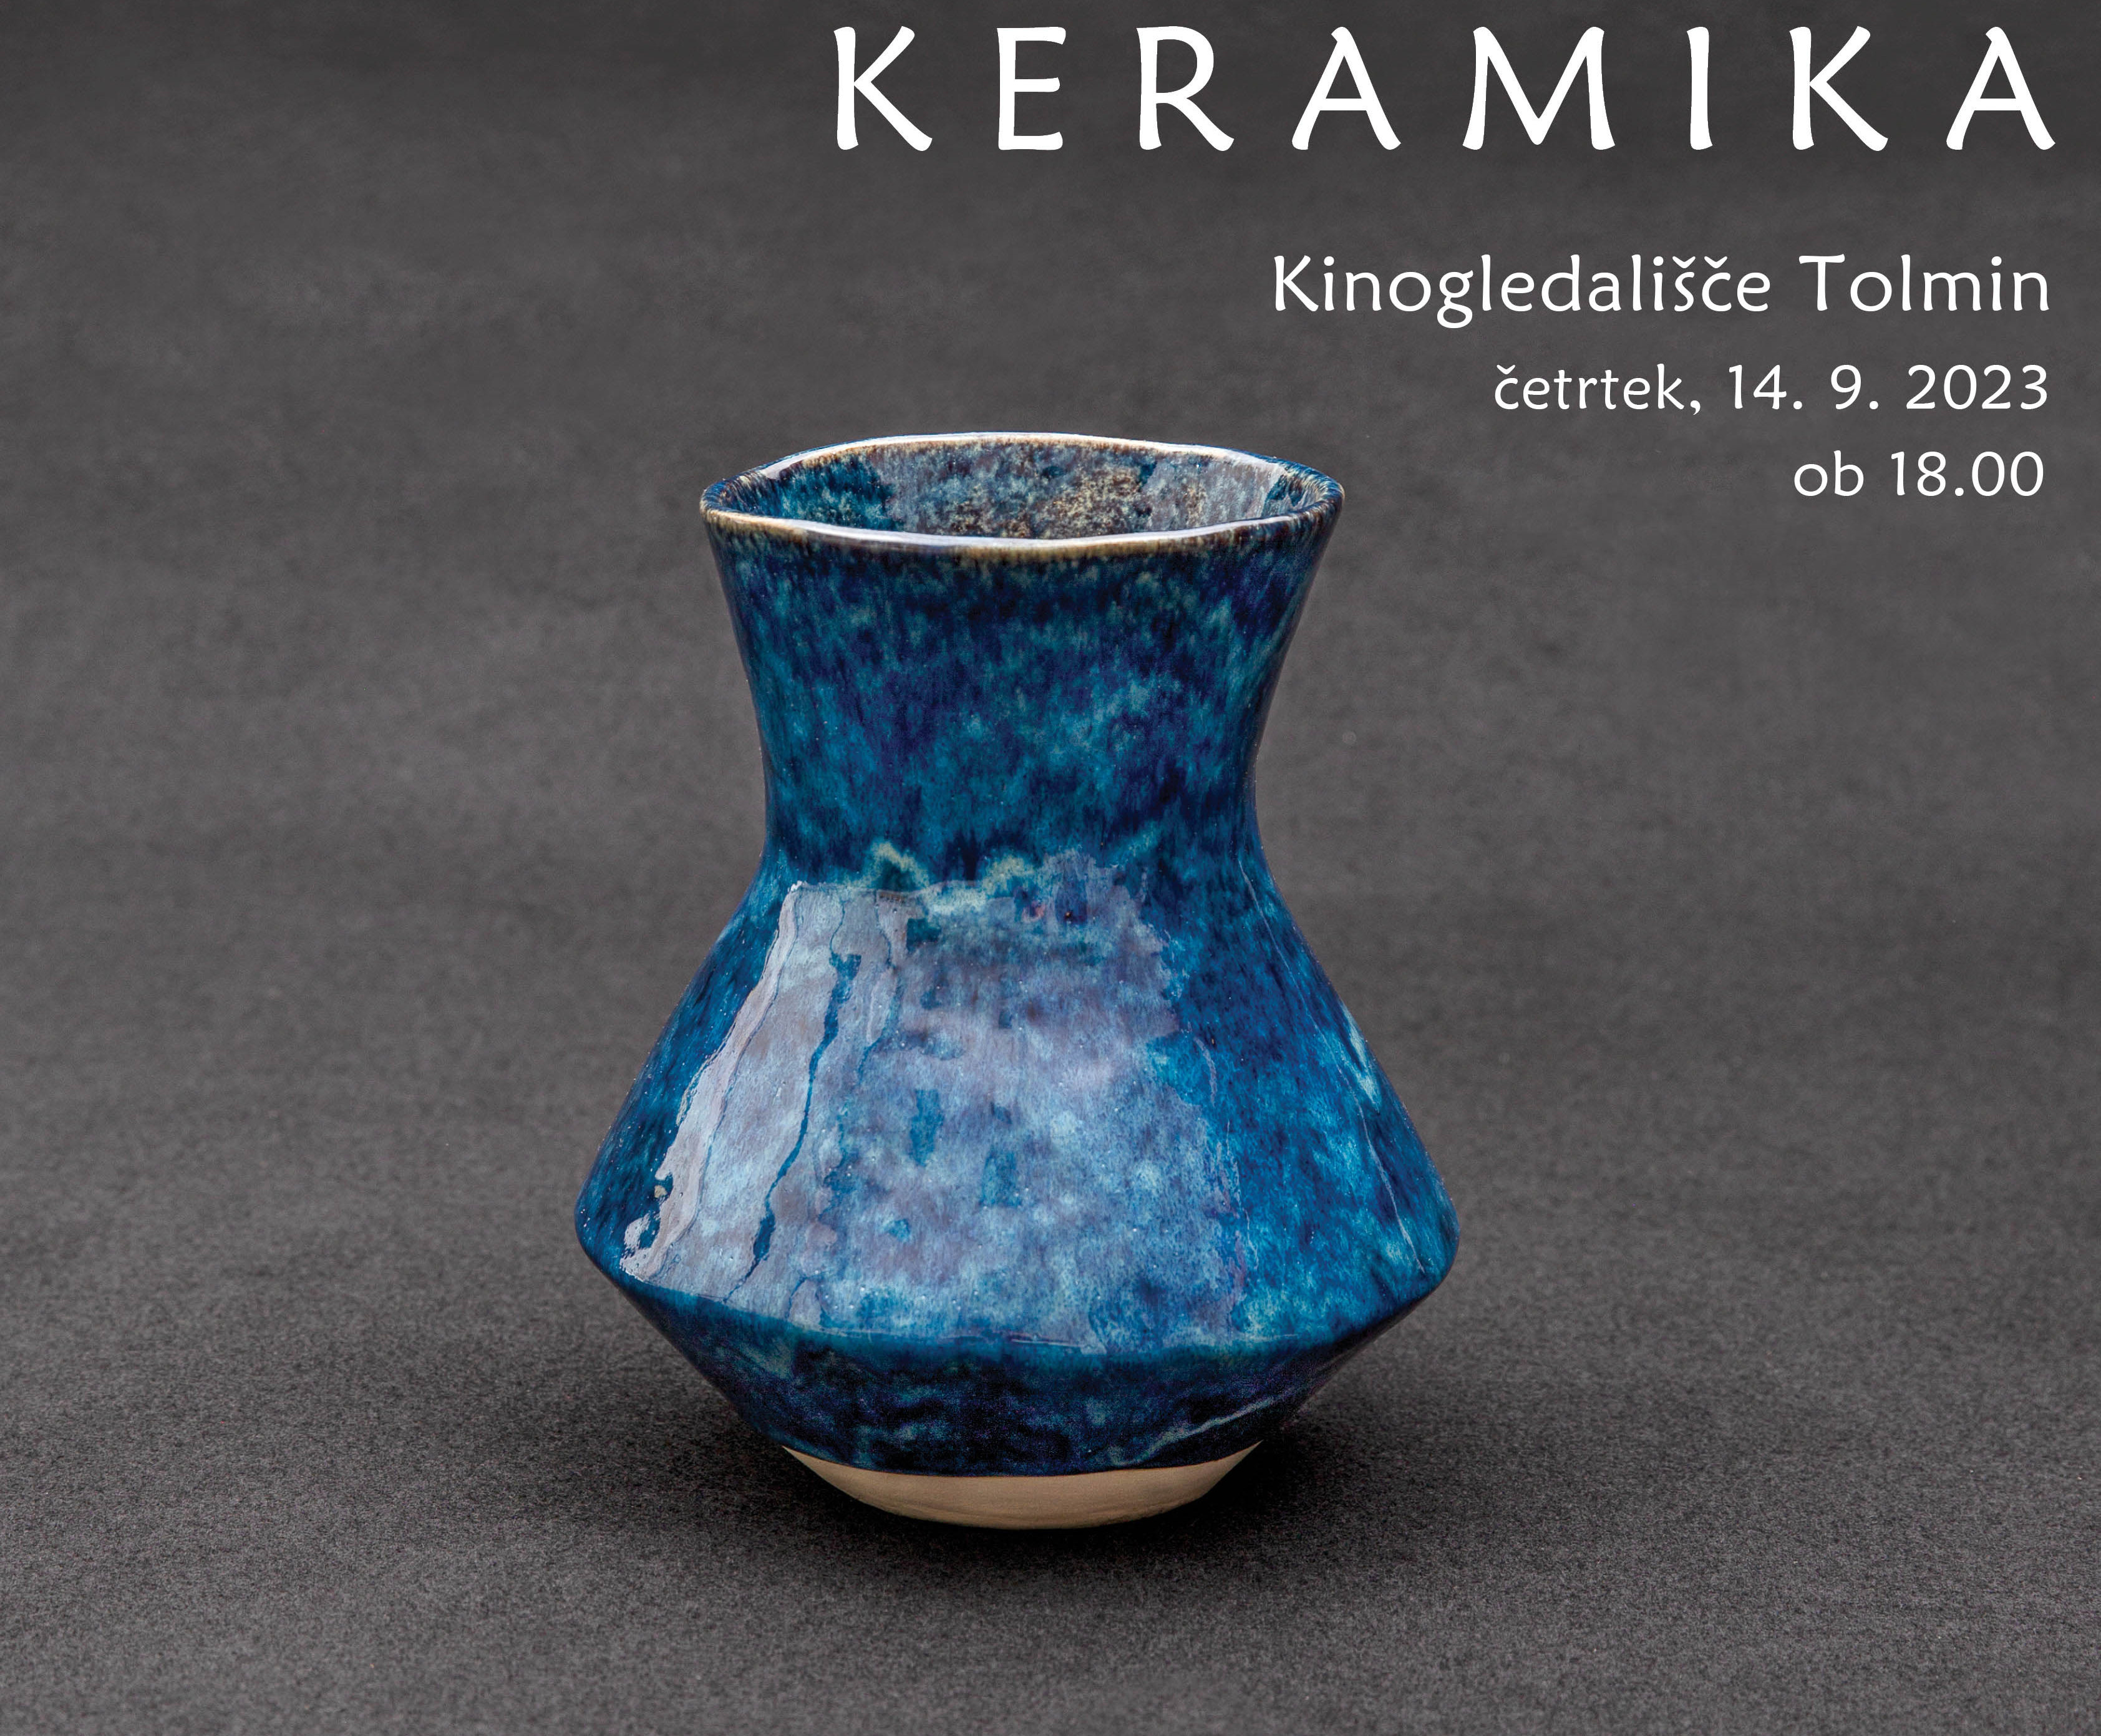 KERAMIKA, odprtje likovne razstave Kluba keramikov Kanal